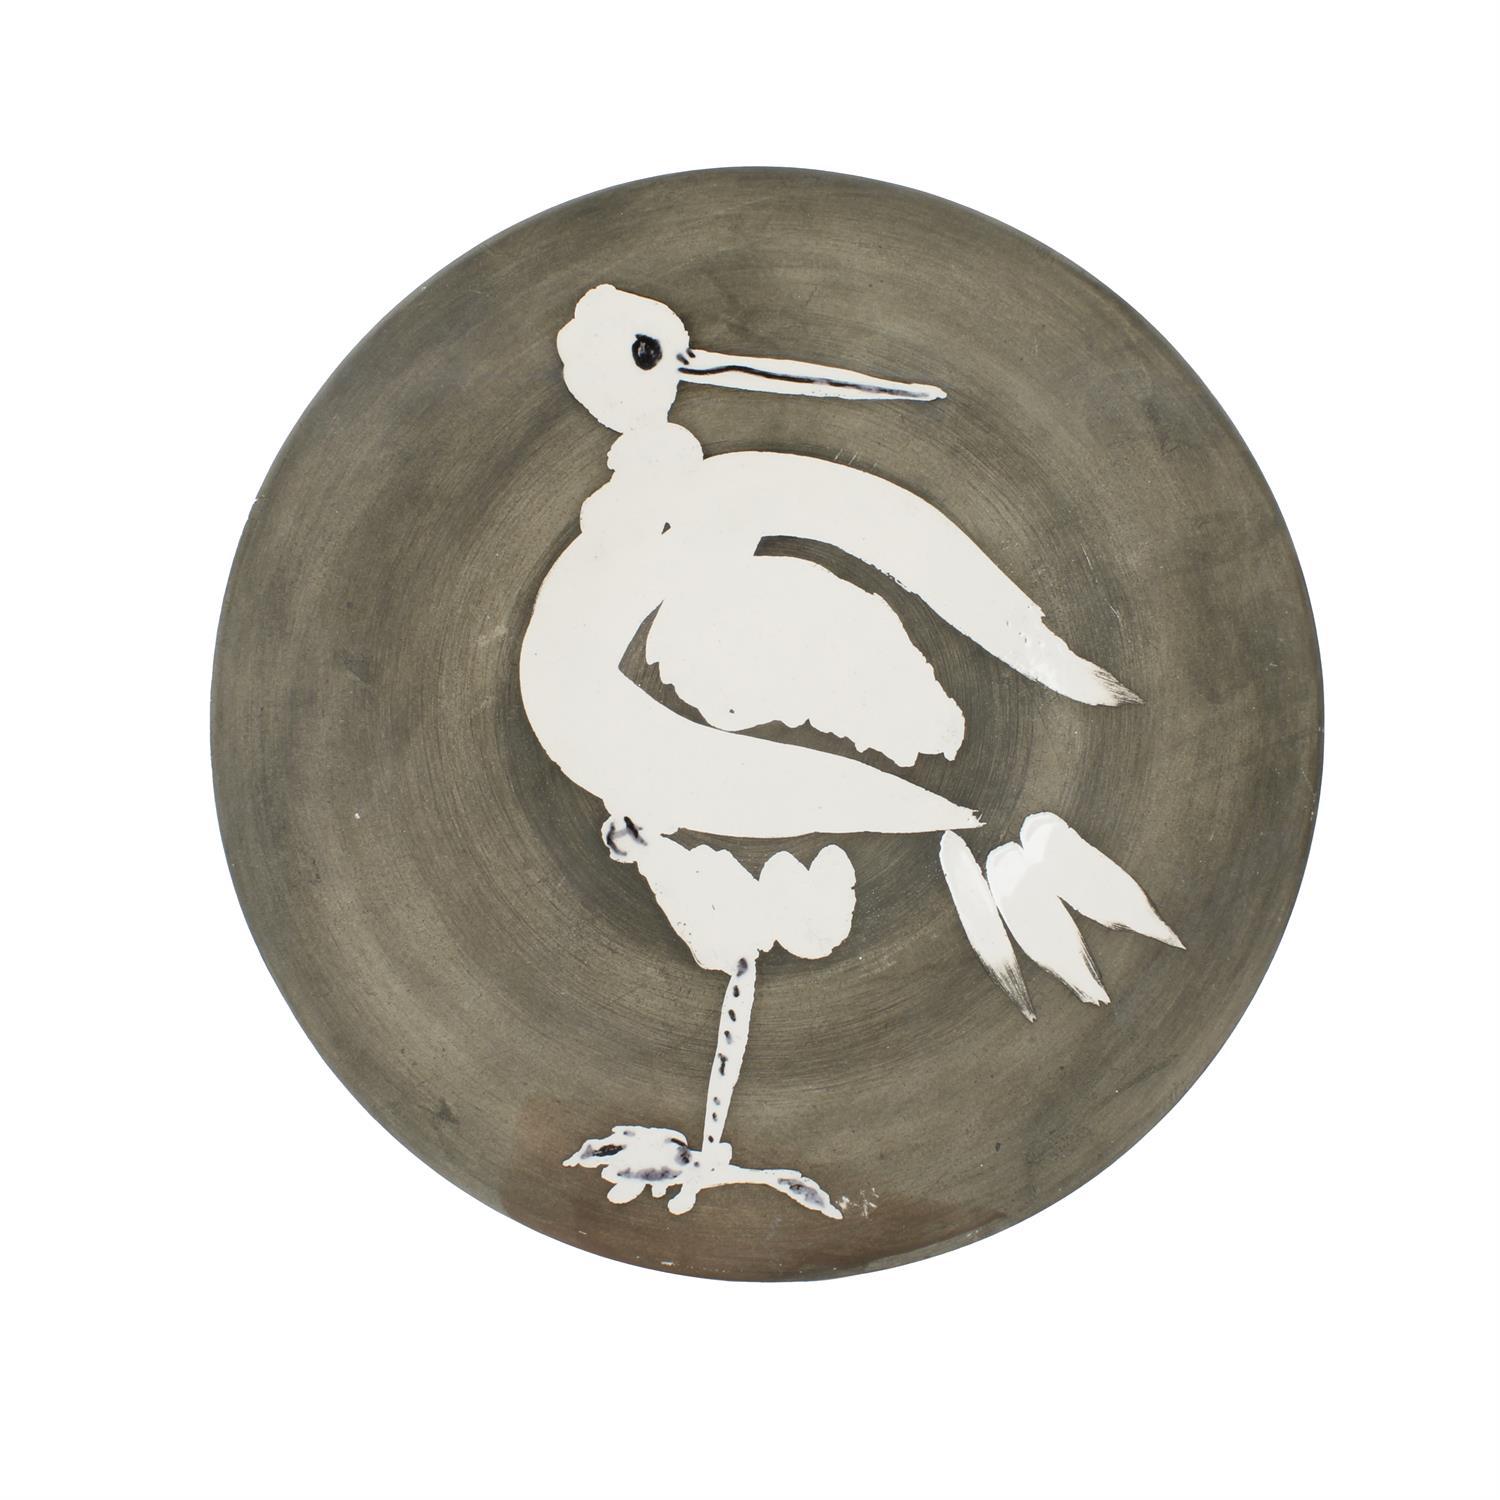 Pablo Picasso Oiseau No. 82 plate